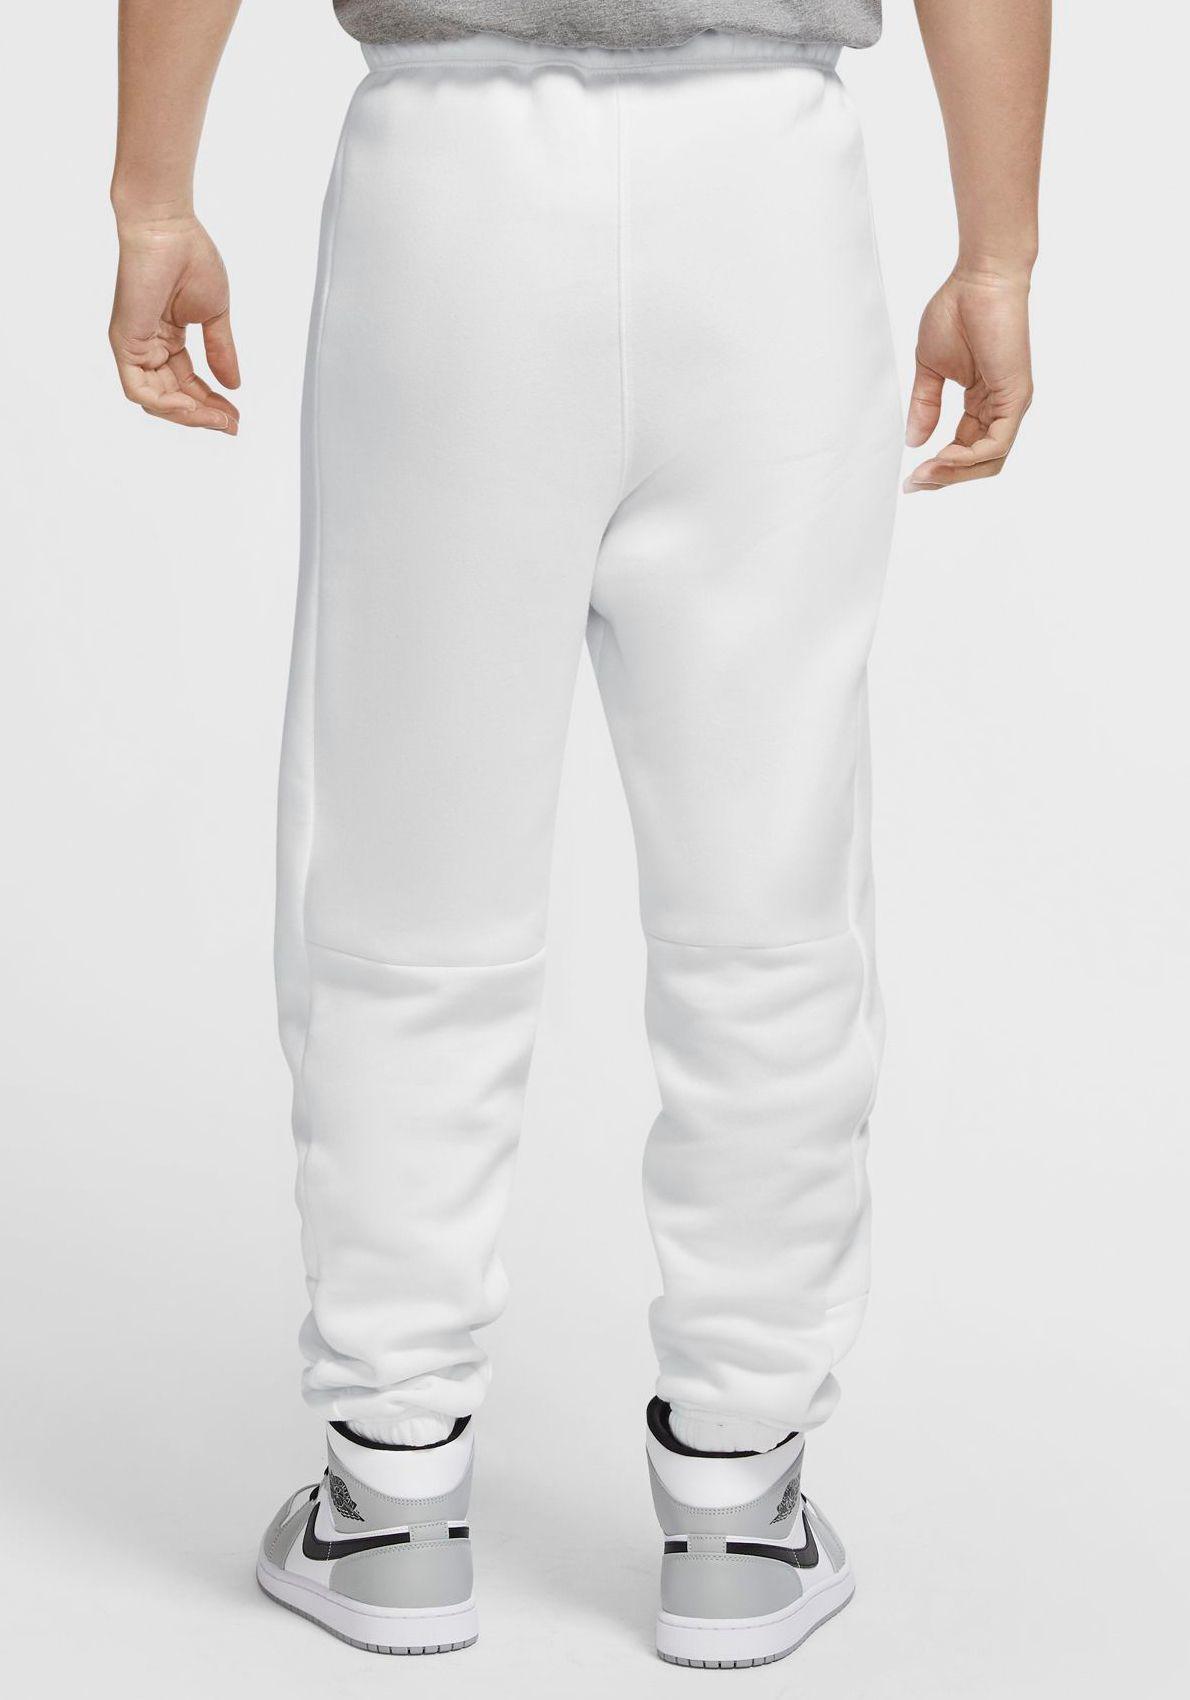 Nike Jumpman Classic Fleece Pants in White/White (White) for Men - Lyst